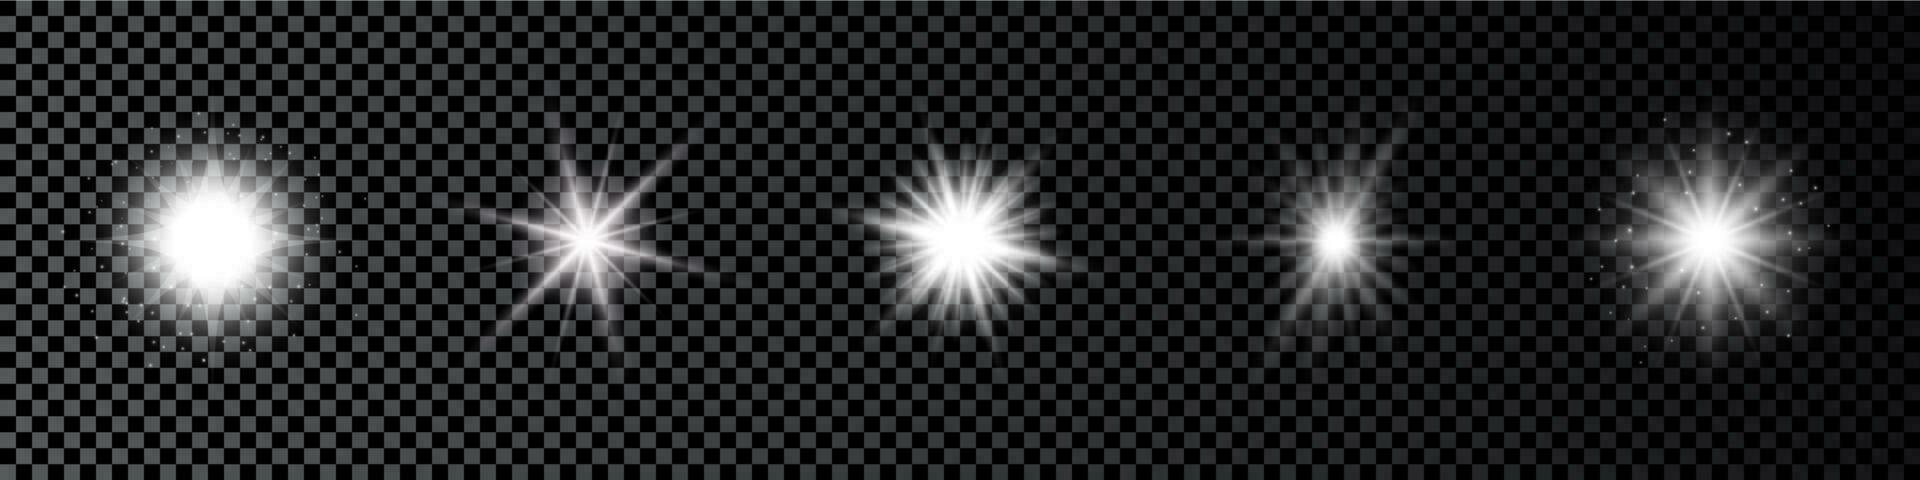 ljus effekt av lins bloss. uppsättning av fem vit lysande lampor starburst effekter med pärlar vektor